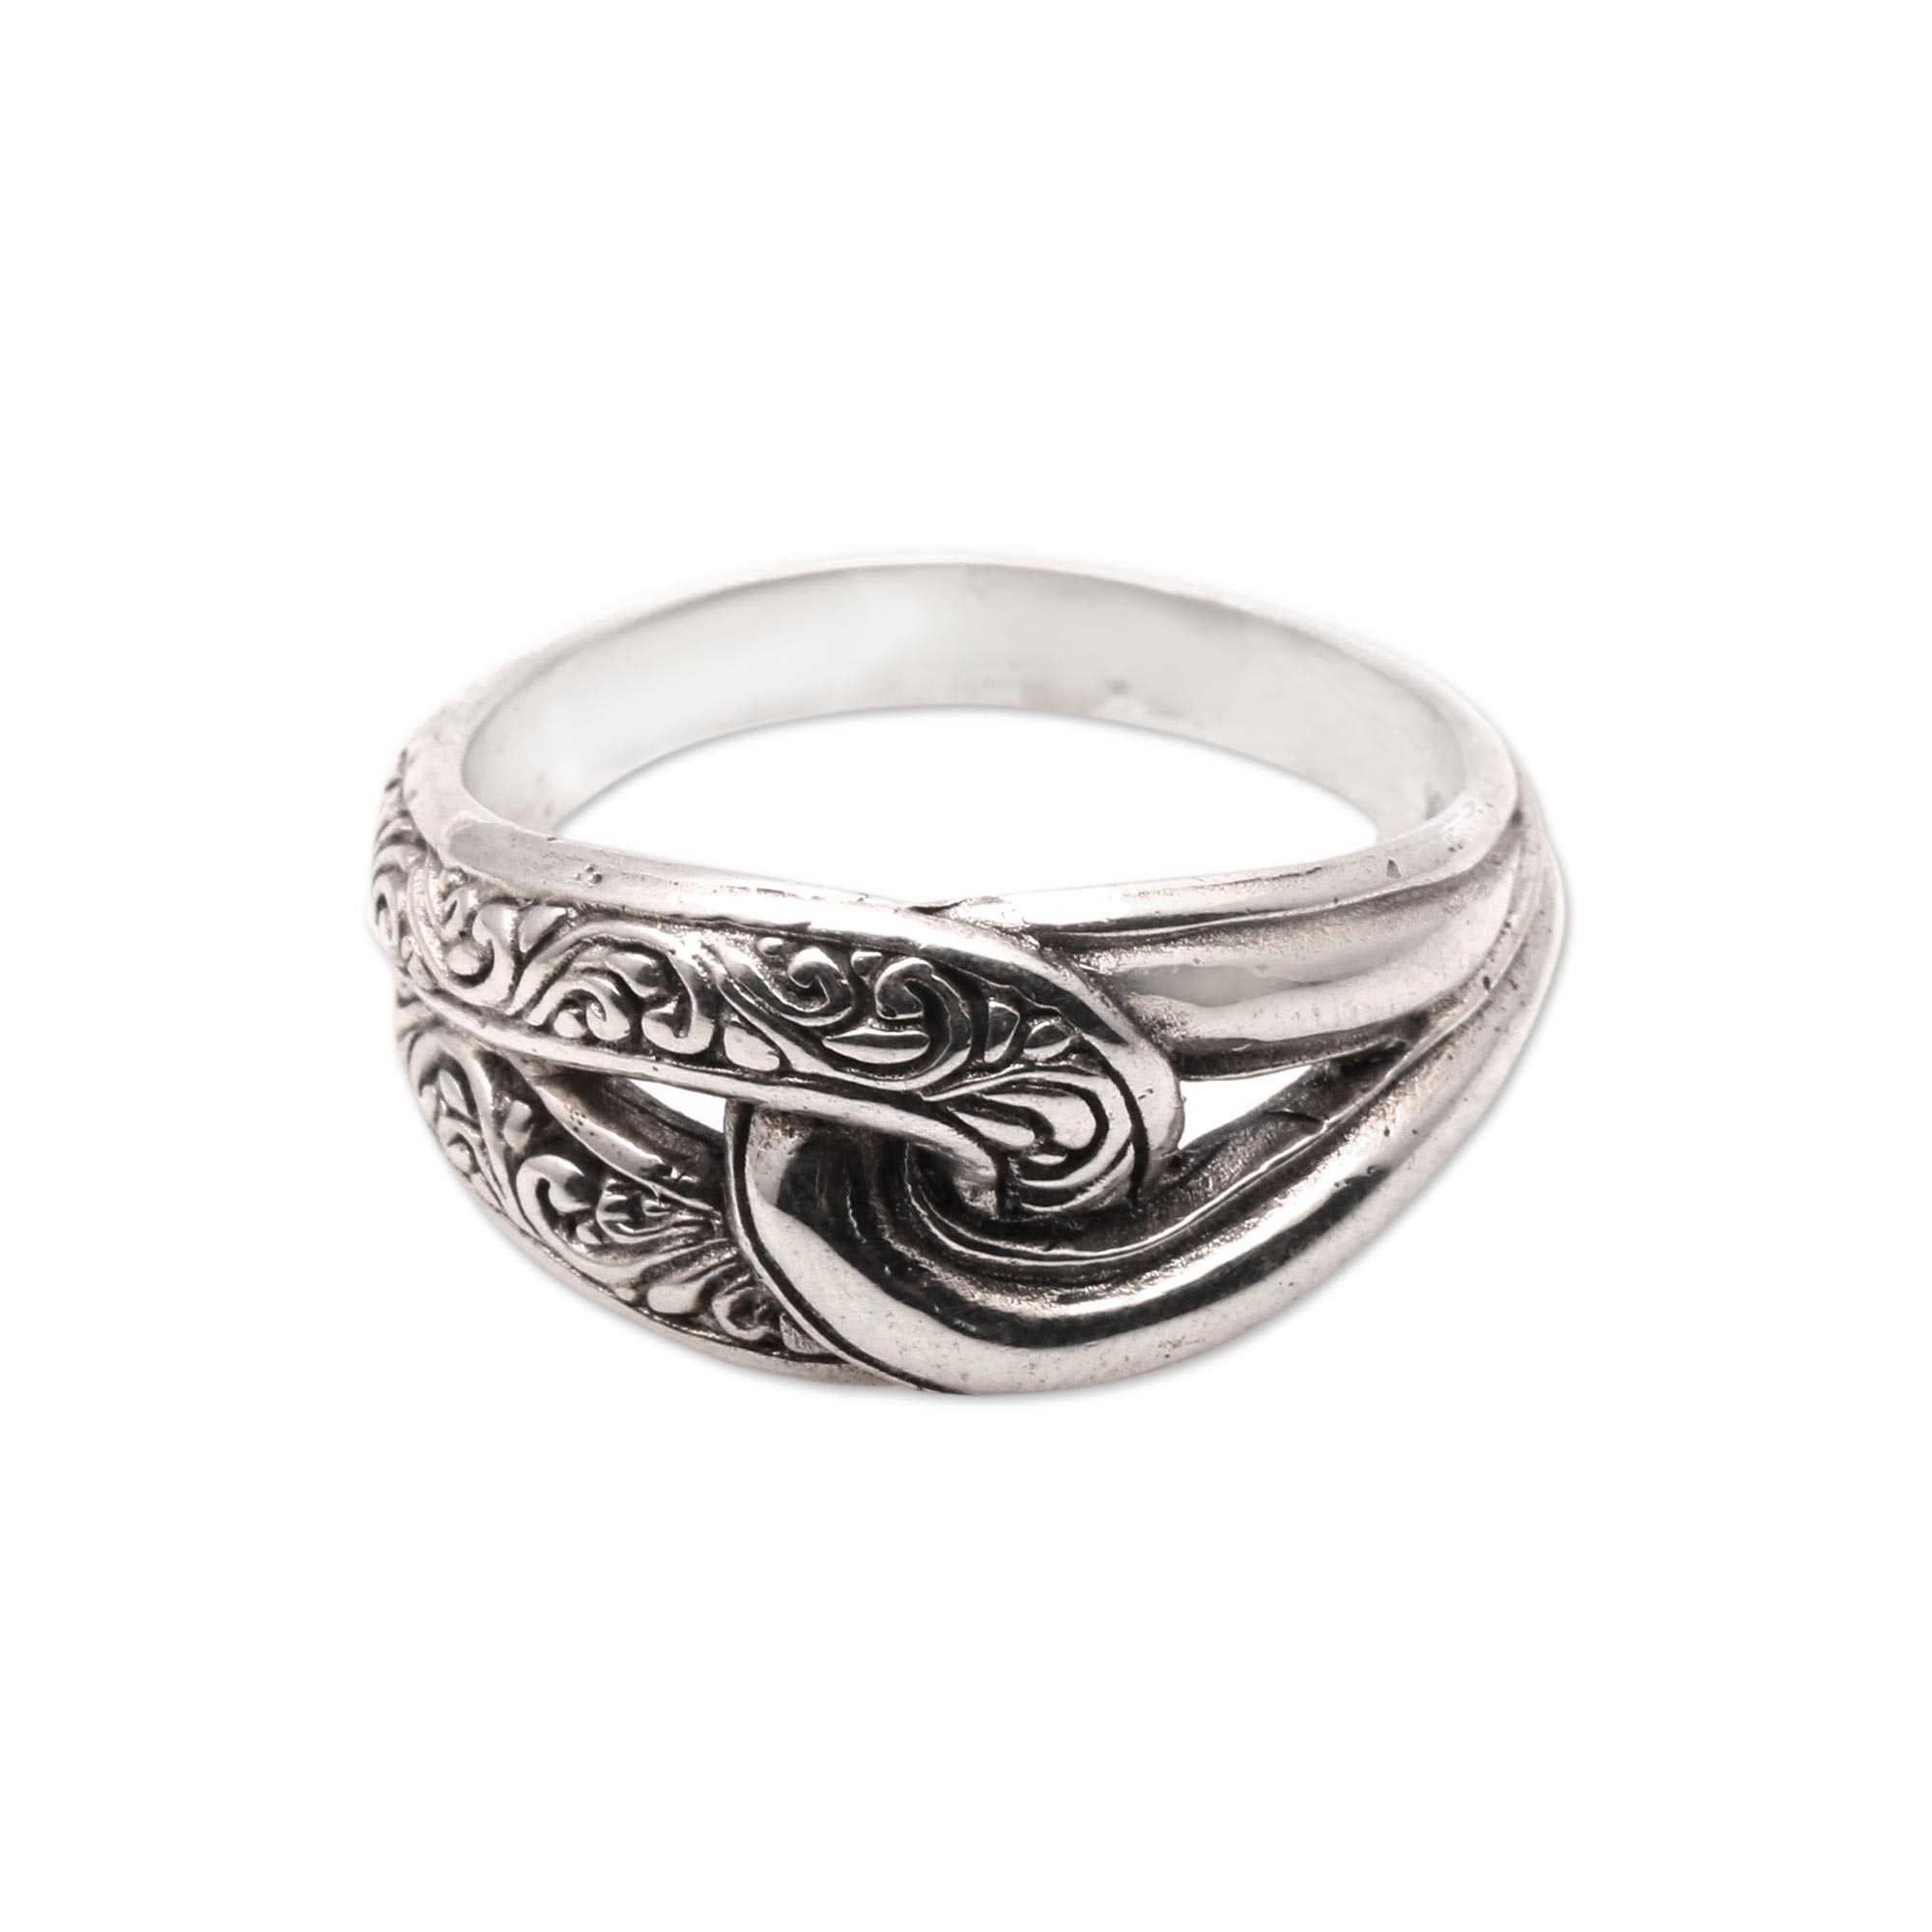 Patterned Sterling Silver Band Ring from Bali - Elegant Link | NOVICA